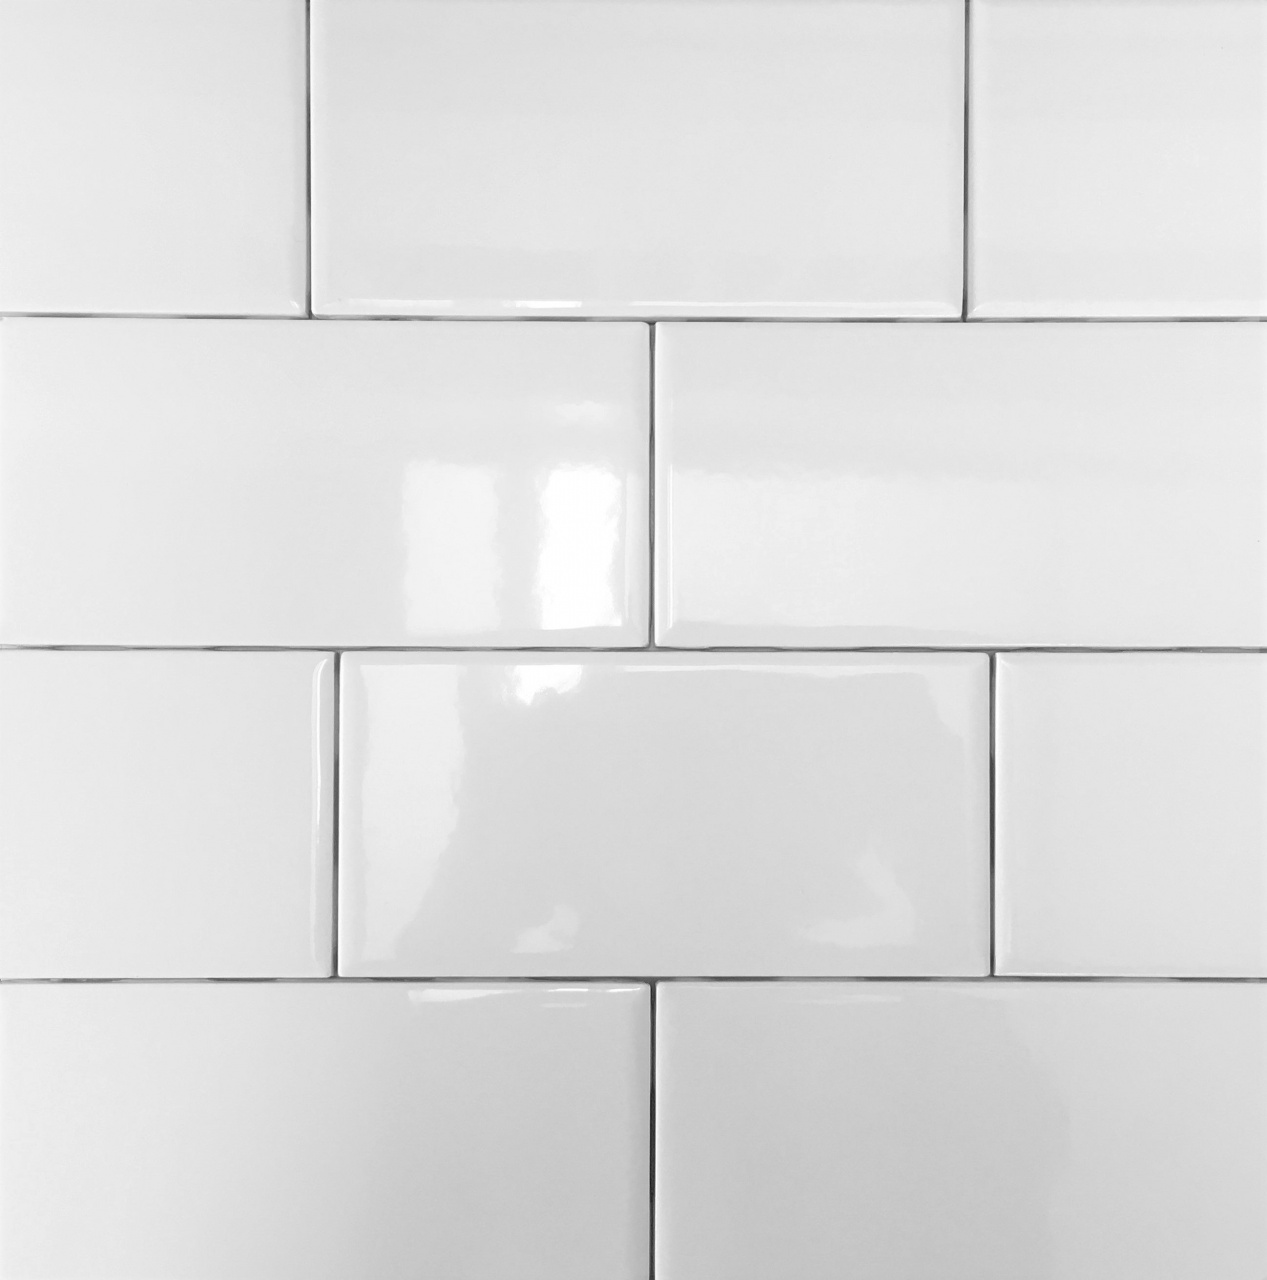 black and white vinyl flooring level 1 backsplash white ice in 2019 from black and white vinyl flooring